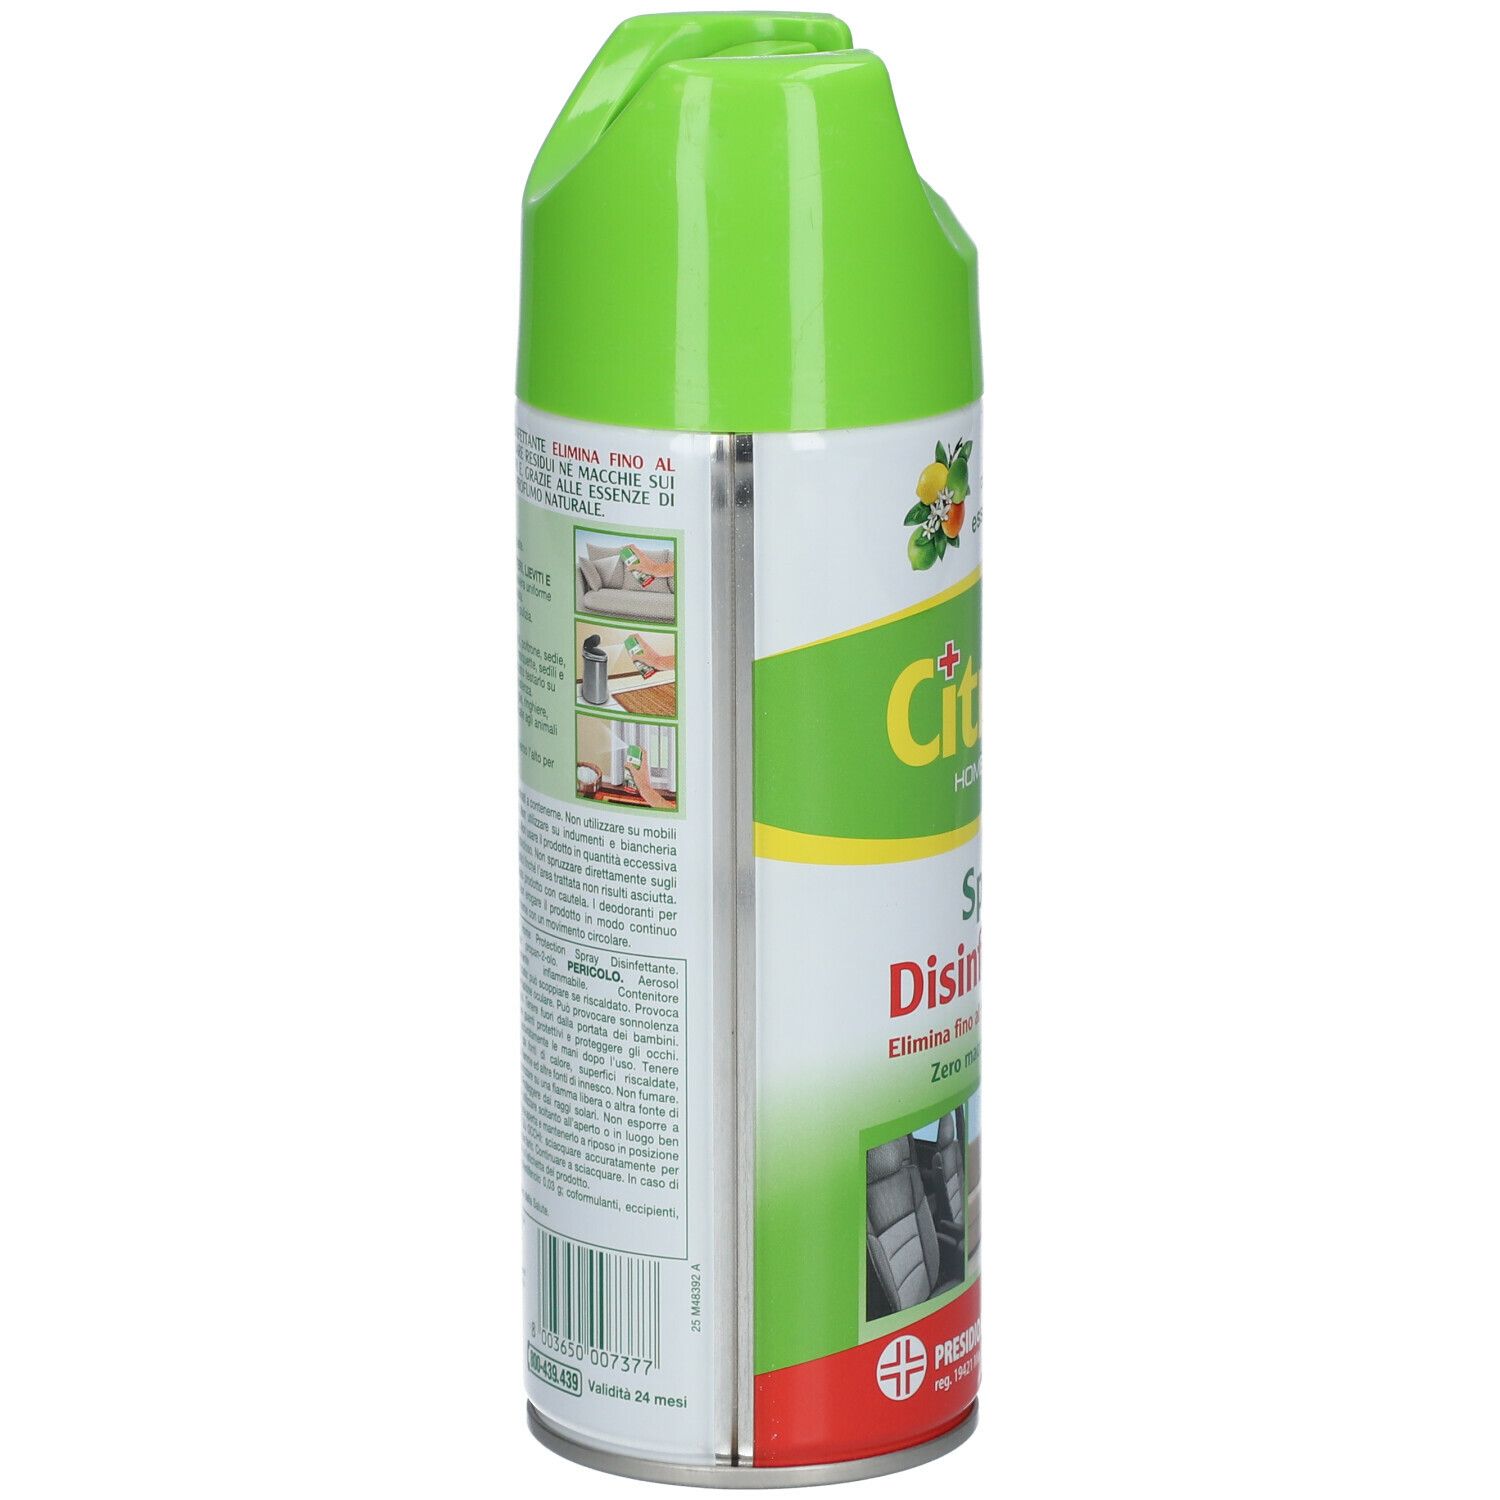 Citrosil Home Protection Spray Disinfettante per la Casa agli Agrumi 300ml  - TuttoFarma